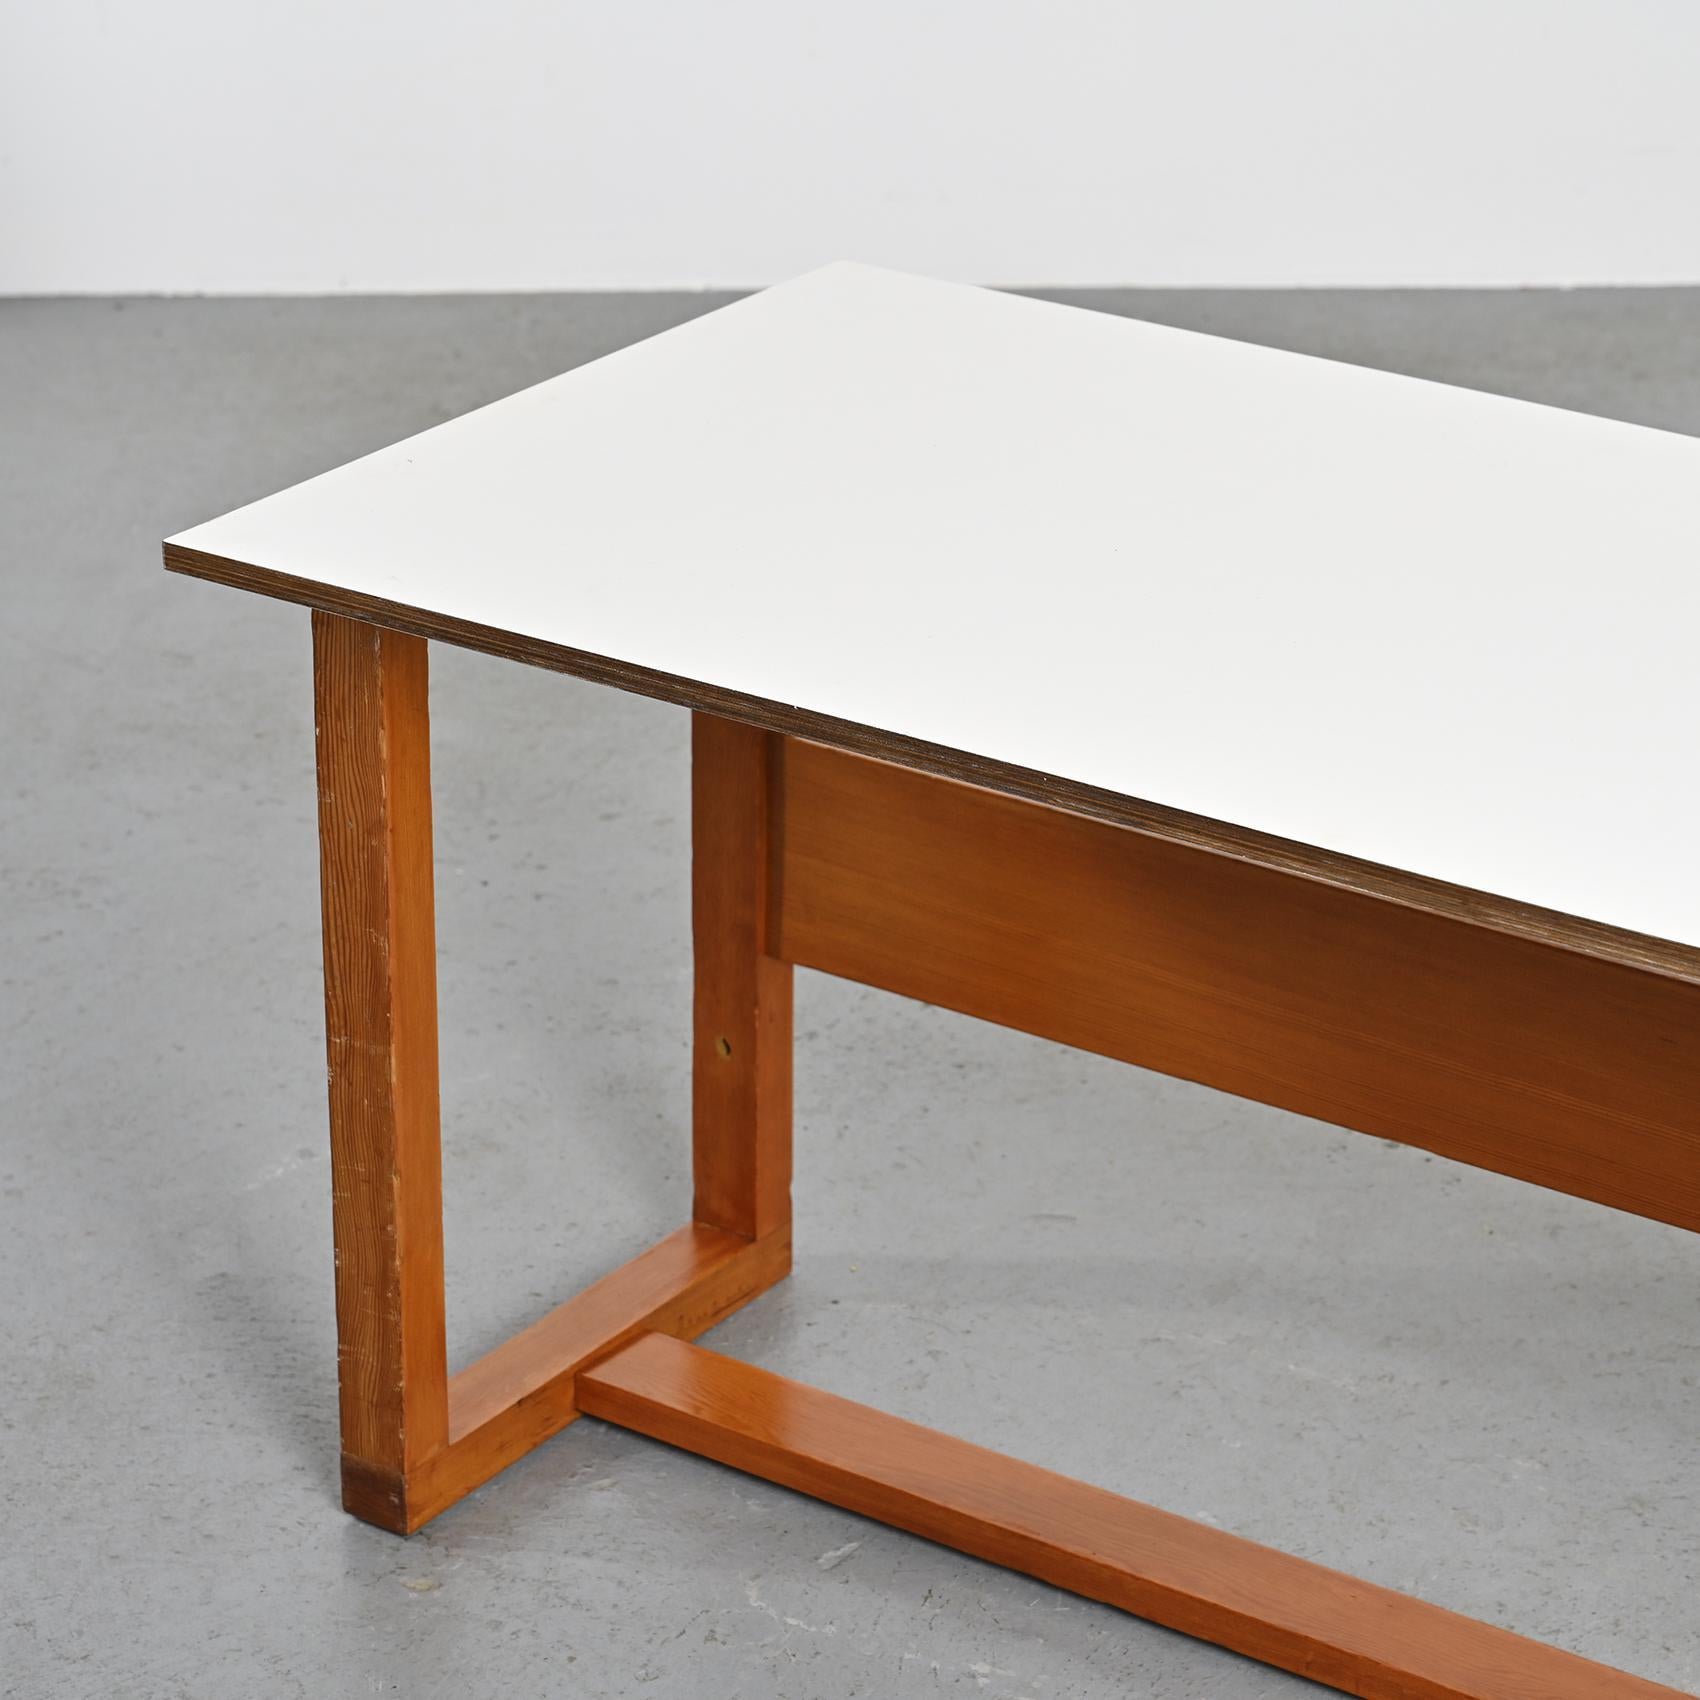 Fabriquée par le visionnaire Pierre Guariche, cette table polyvalente se transforme en table basse, en bureau ou même en table à manger selon vos besoins.

Méticuleusement construit en contreplaqué incurvé et orné d'un stratifié blanc crème, un